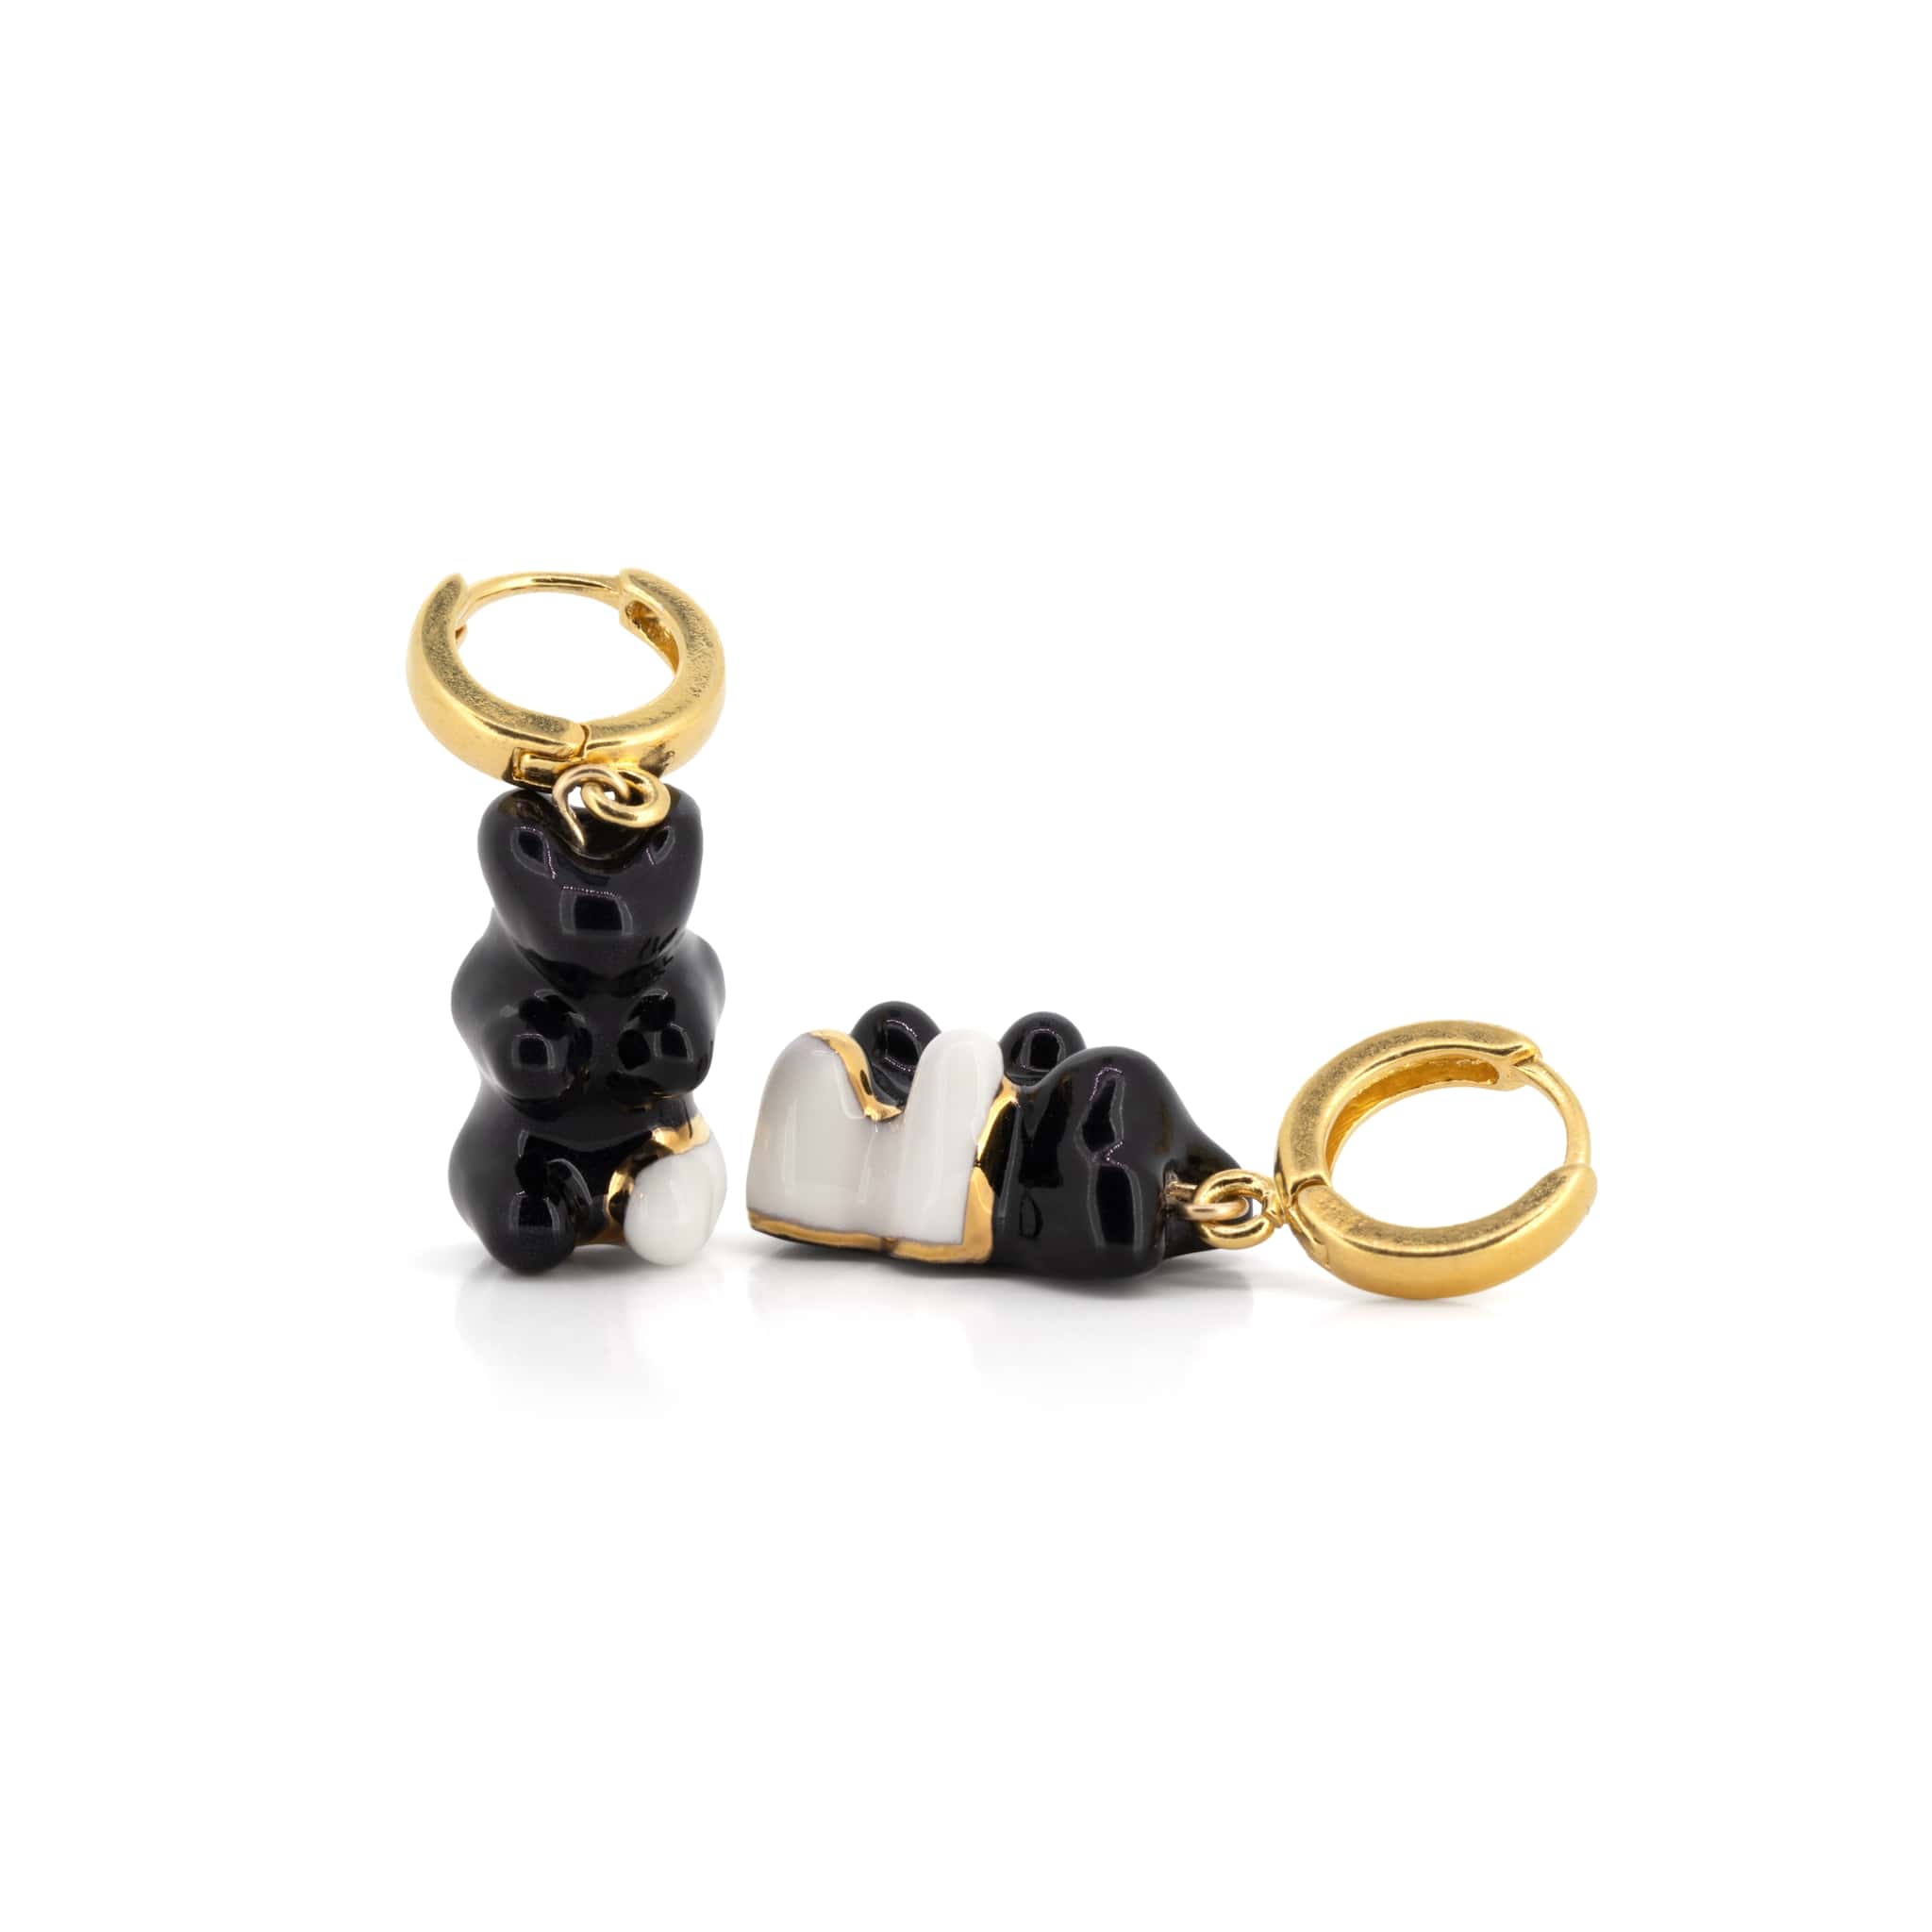 Black & White Gummy Bear Dangle Earrings With Gold